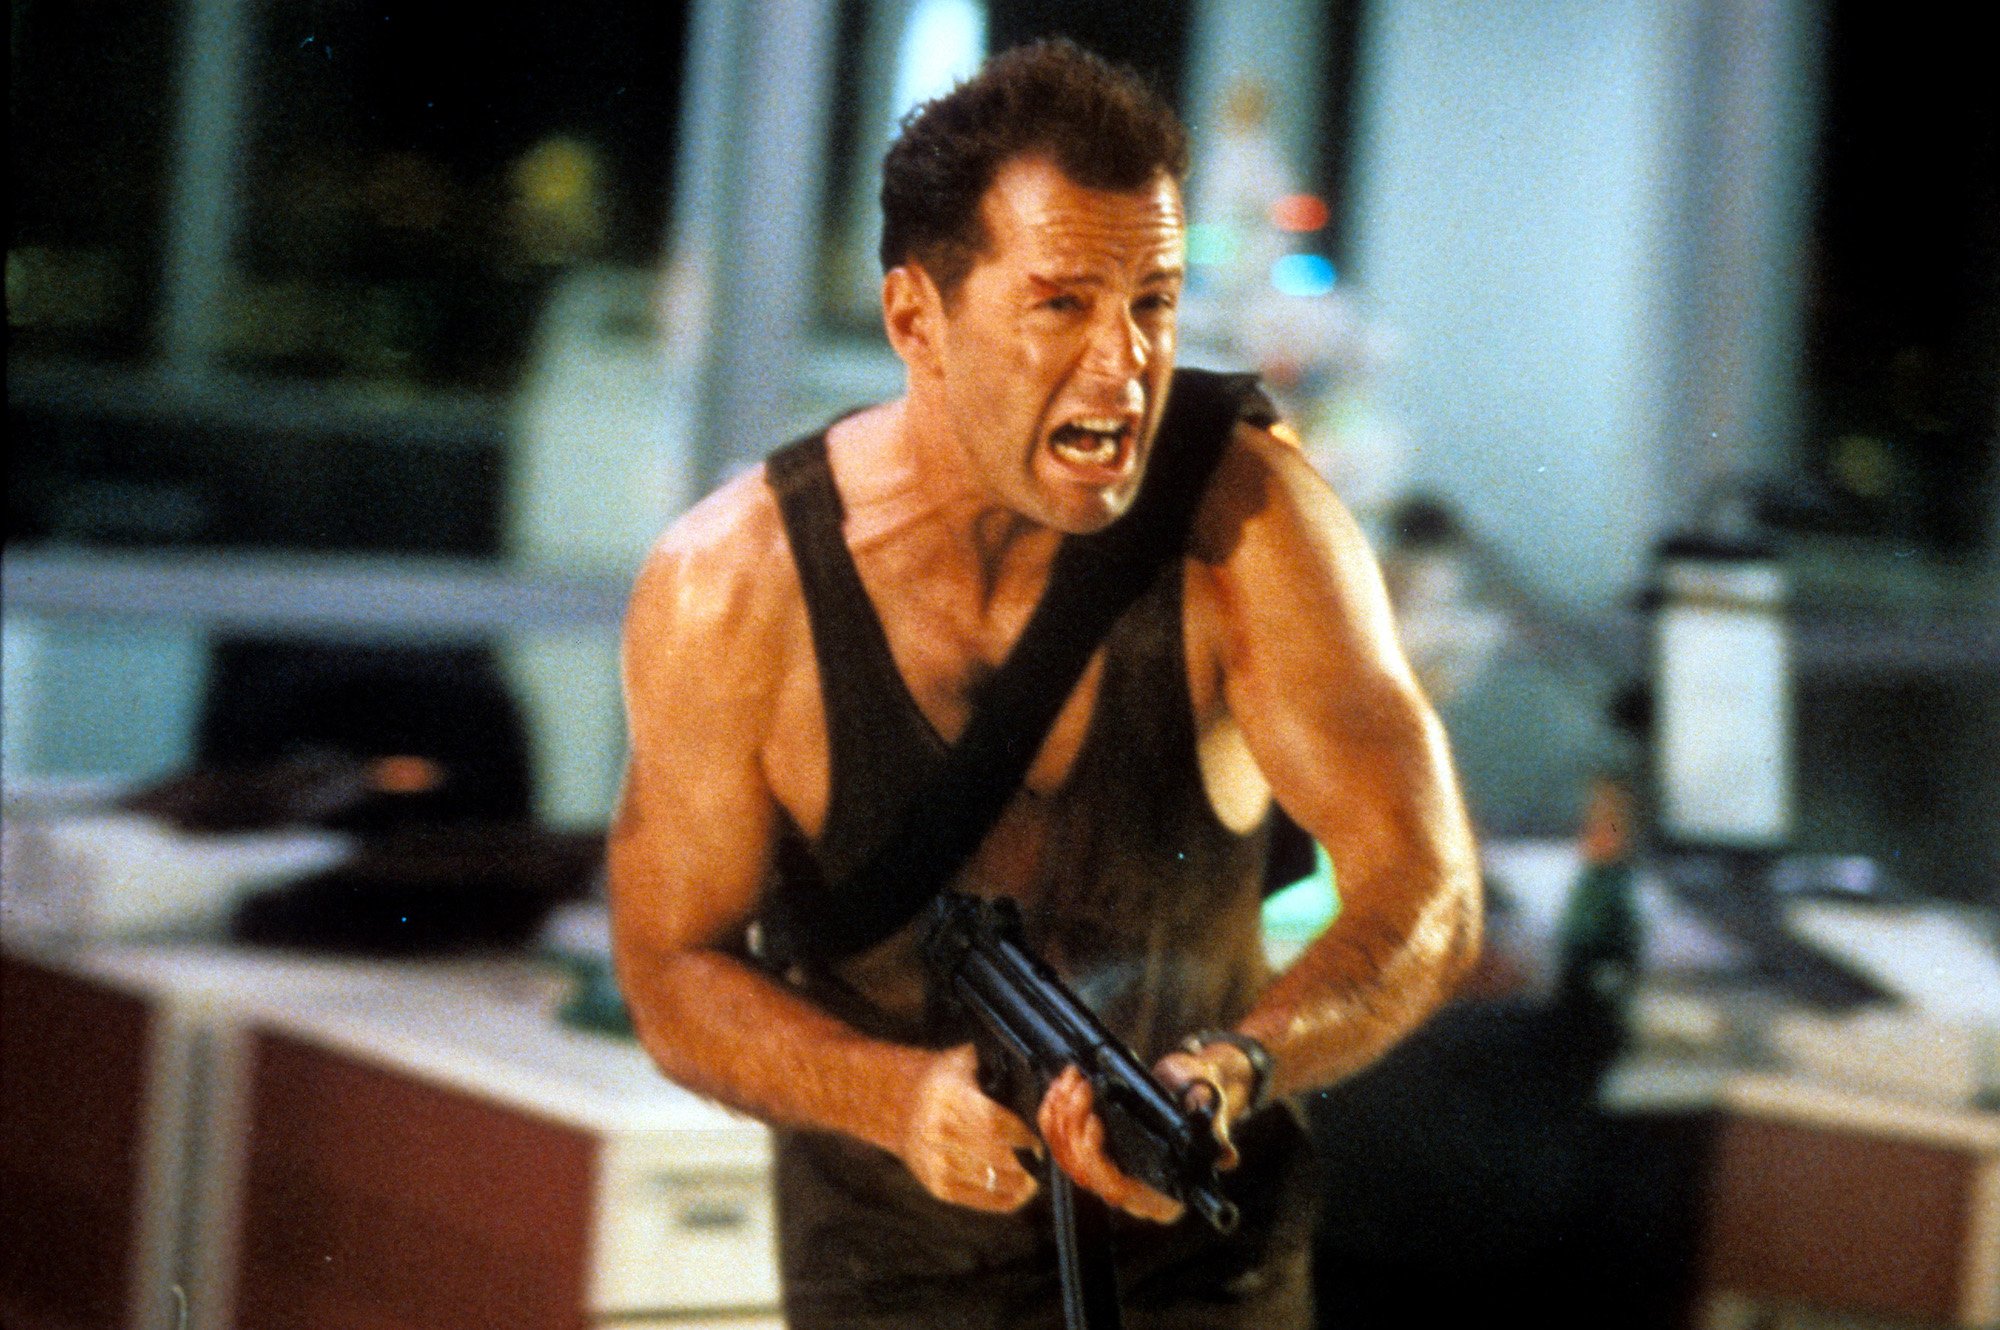 Die Hard: Bruce Willis runs with a machine gun